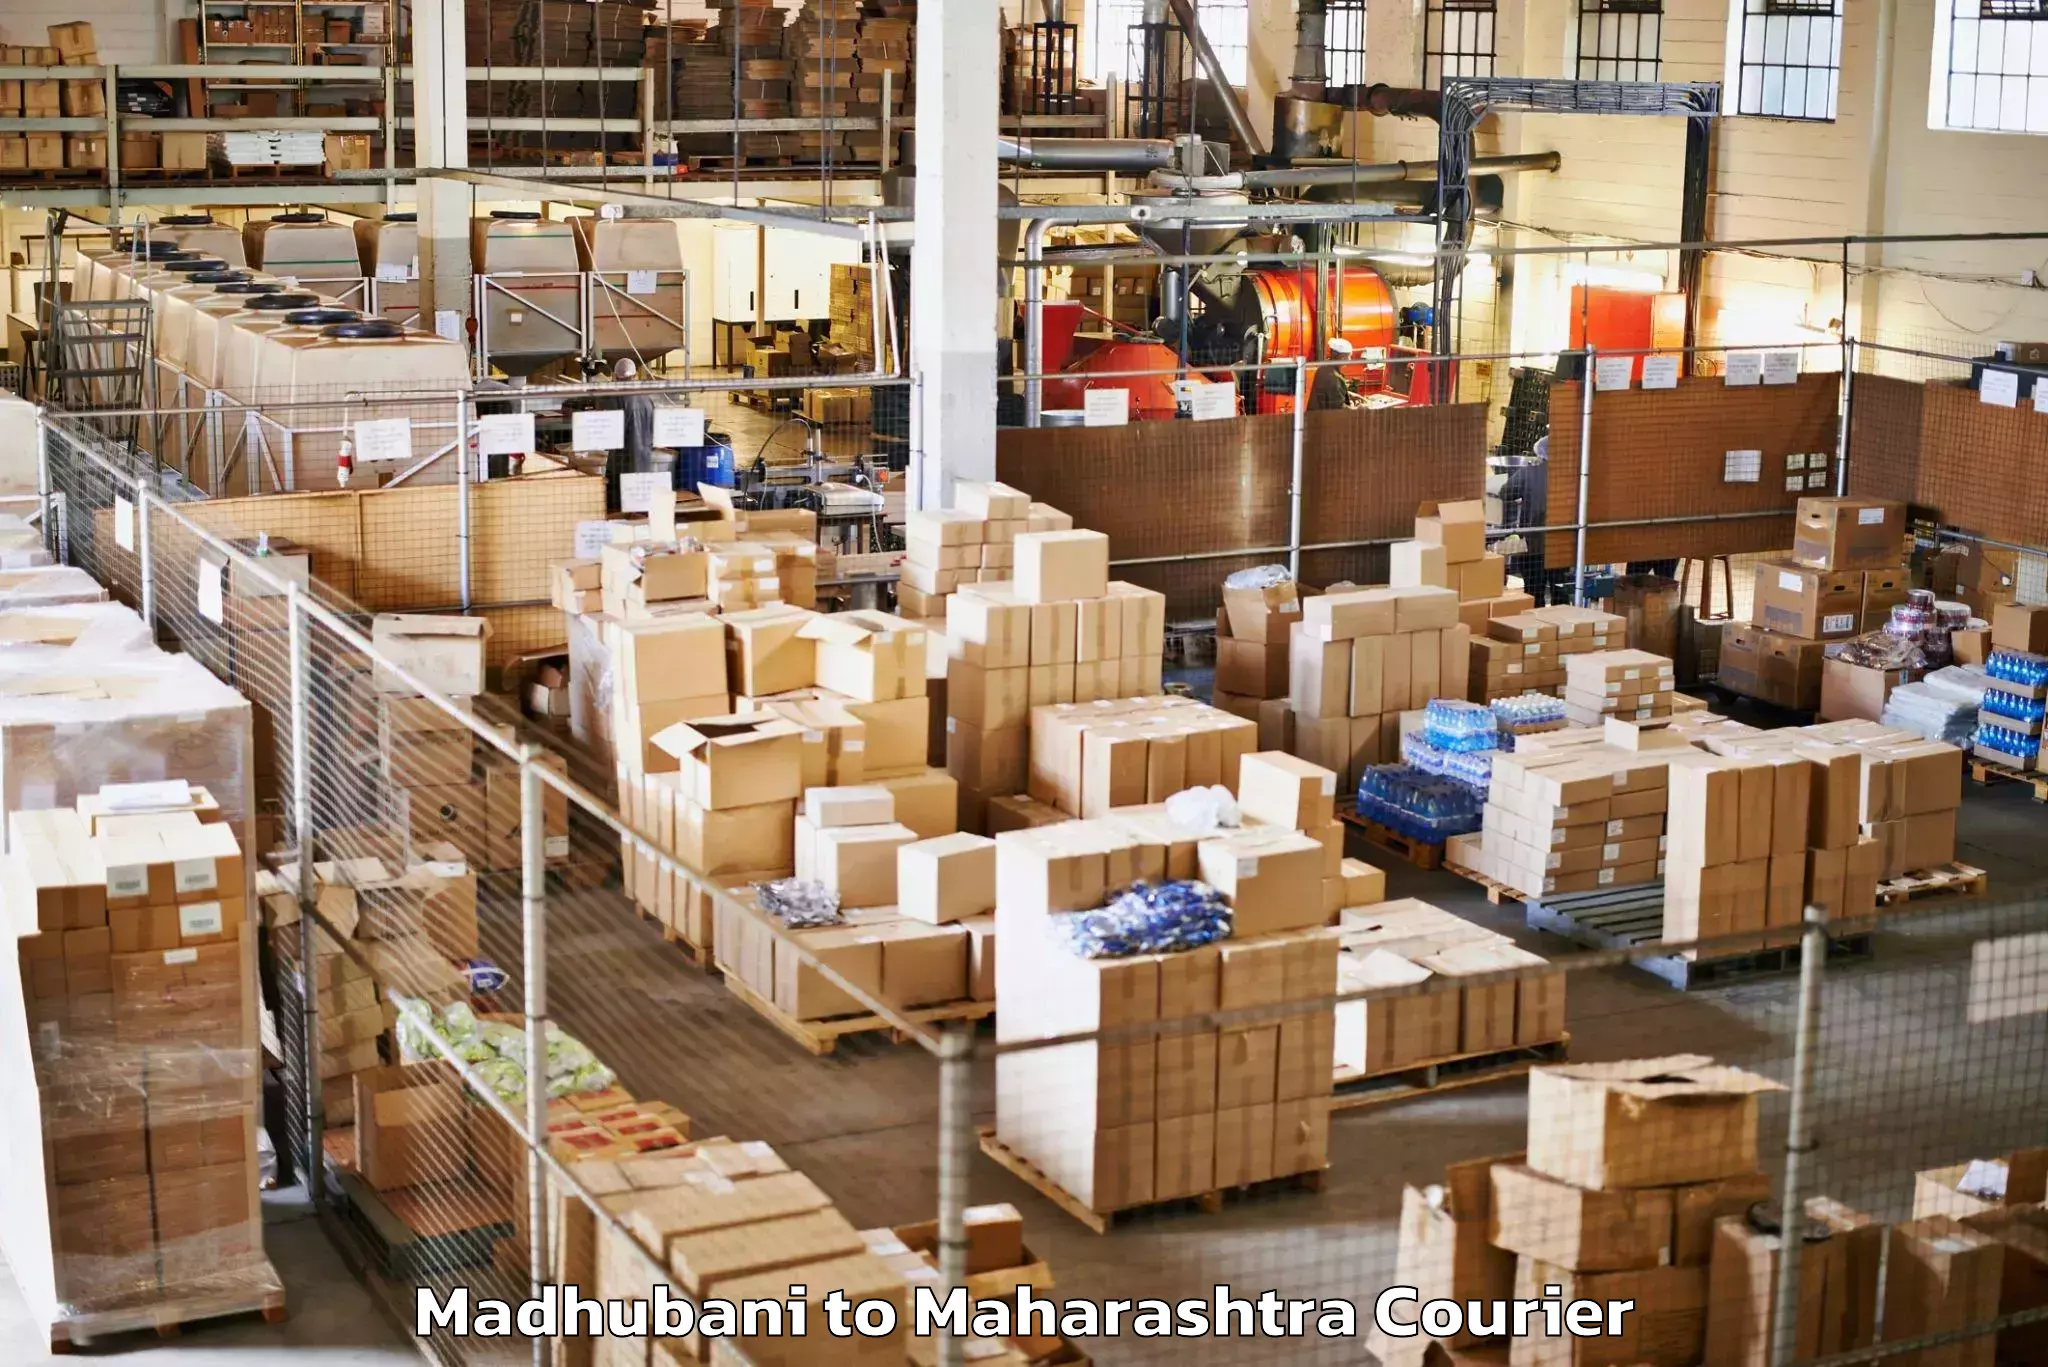 Baggage delivery management Madhubani to Maharashtra